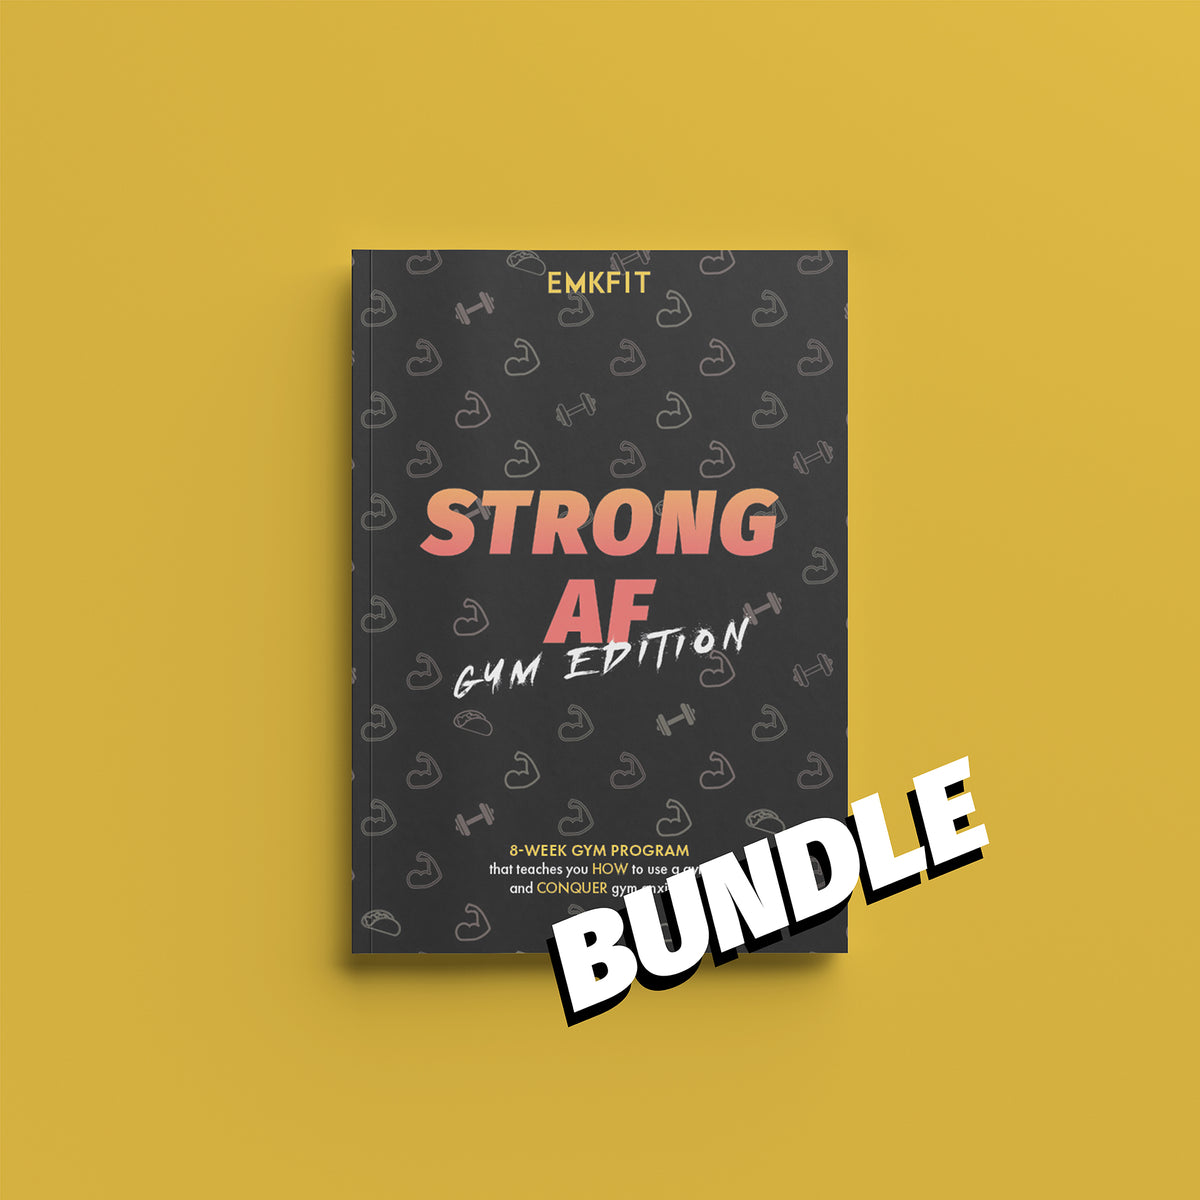 STRONG AF BUNDLE - THE GYM + BANDS